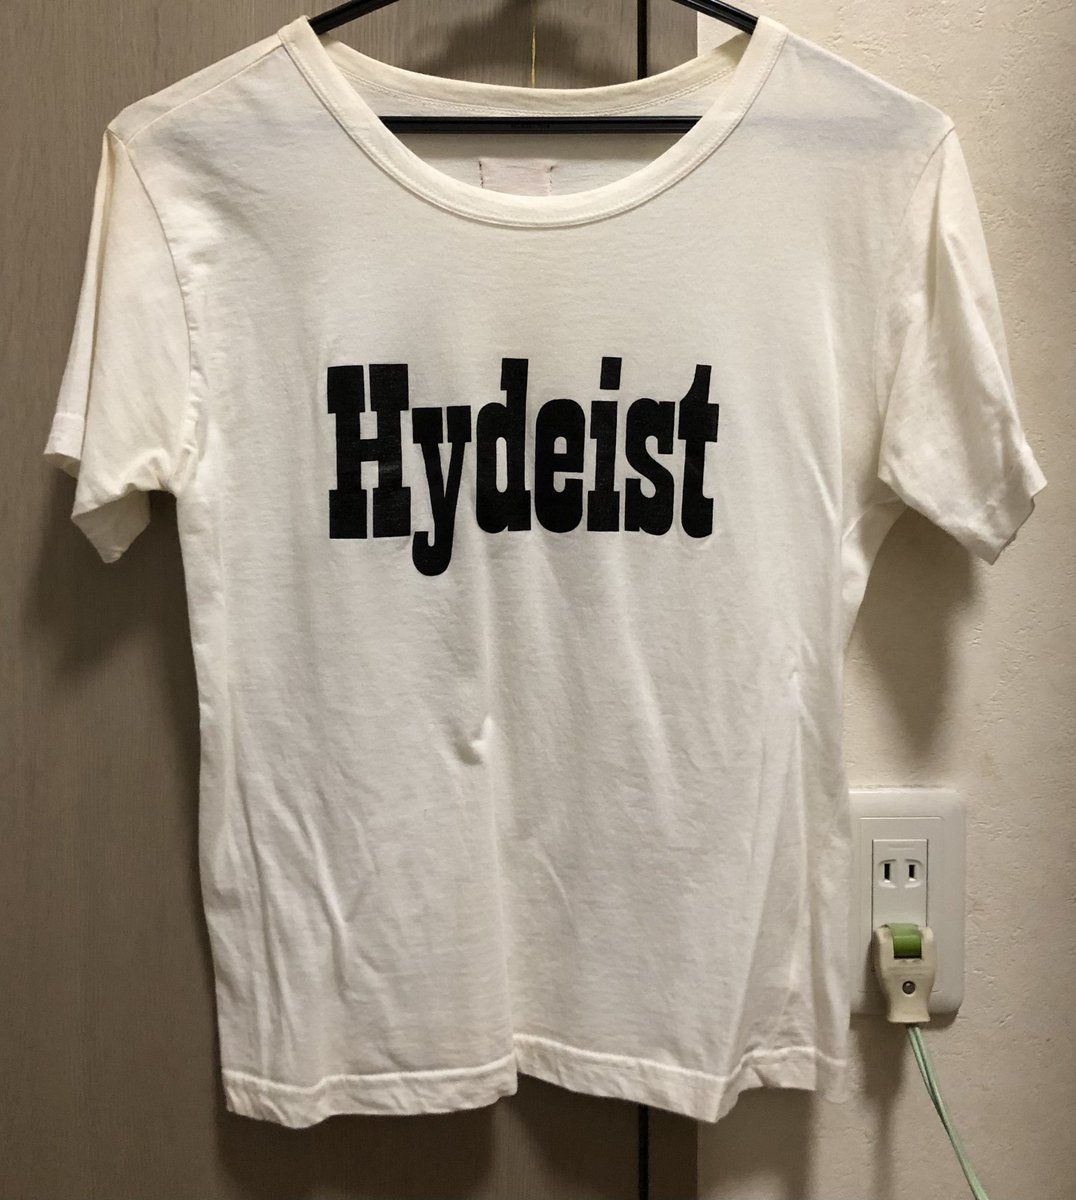 TシャツはHYDEさんの手書きの絵がプリントされた物や、ラルクがI.mドエルだったので、I.mハイディストとか嬉しいかも笑
@HydeOfficial_ 
#HYDE 
#HYDEグッズ考案